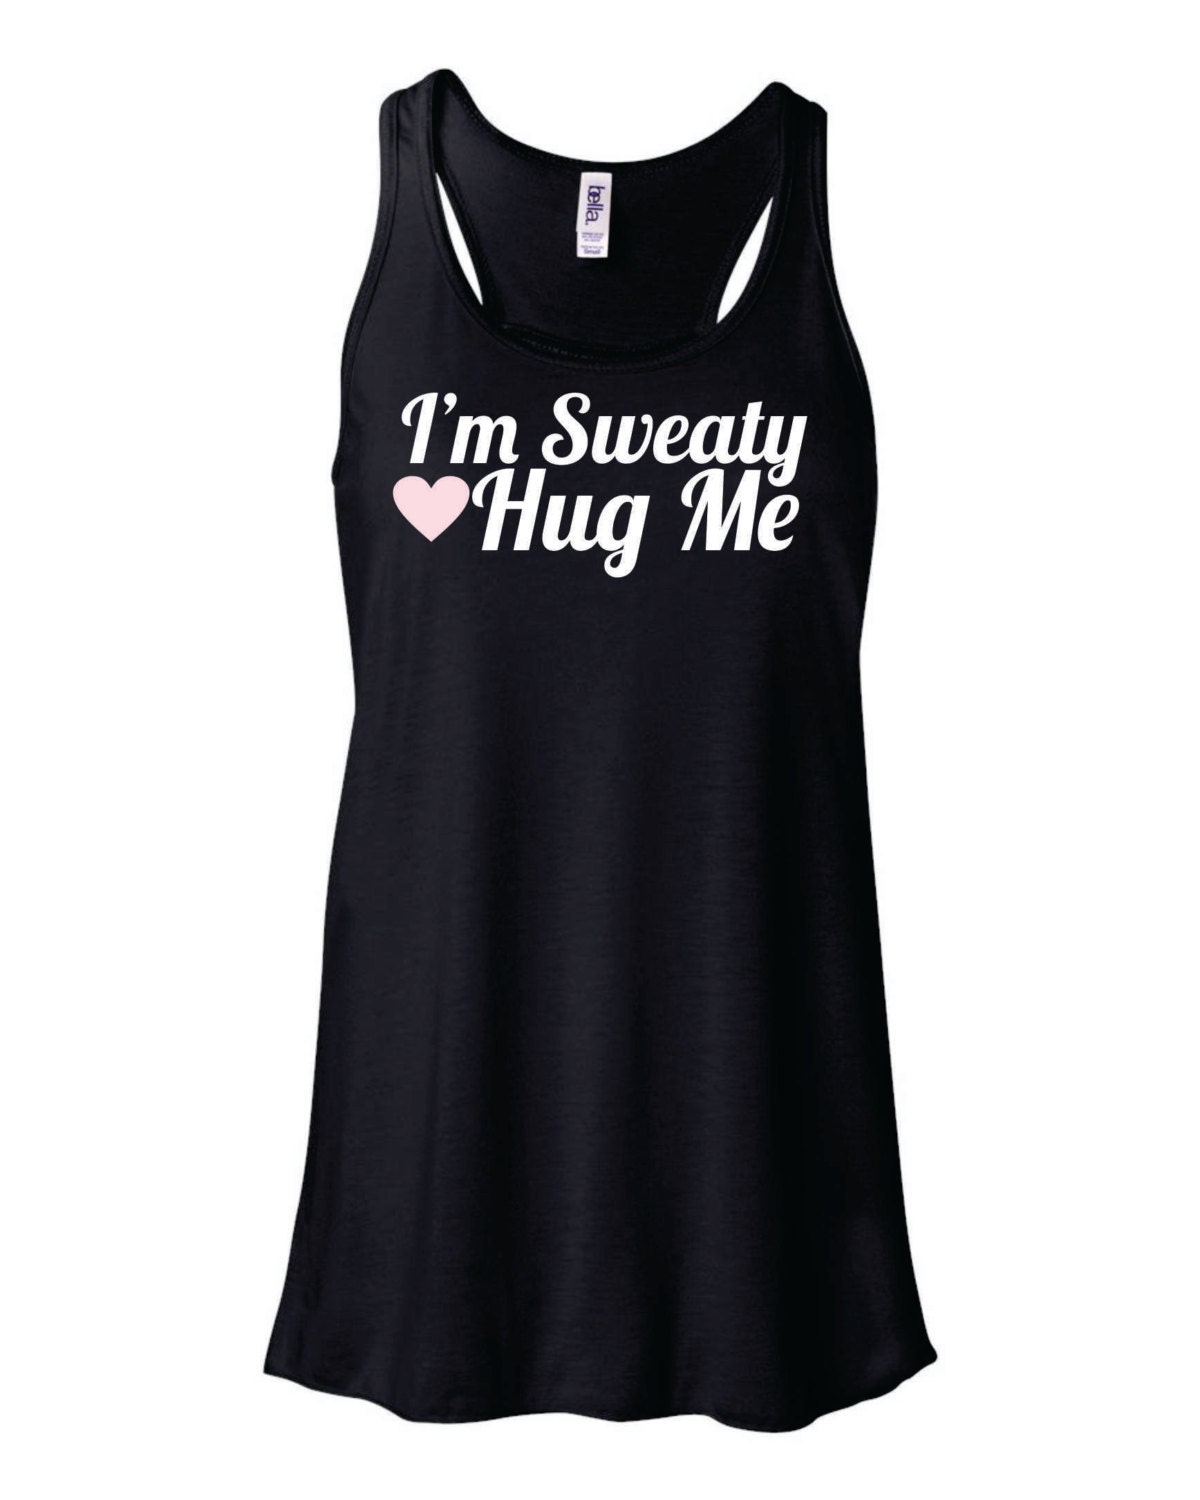 I'm Sweaty Hug Me flowy funny workout tank by MashDesignsOnline